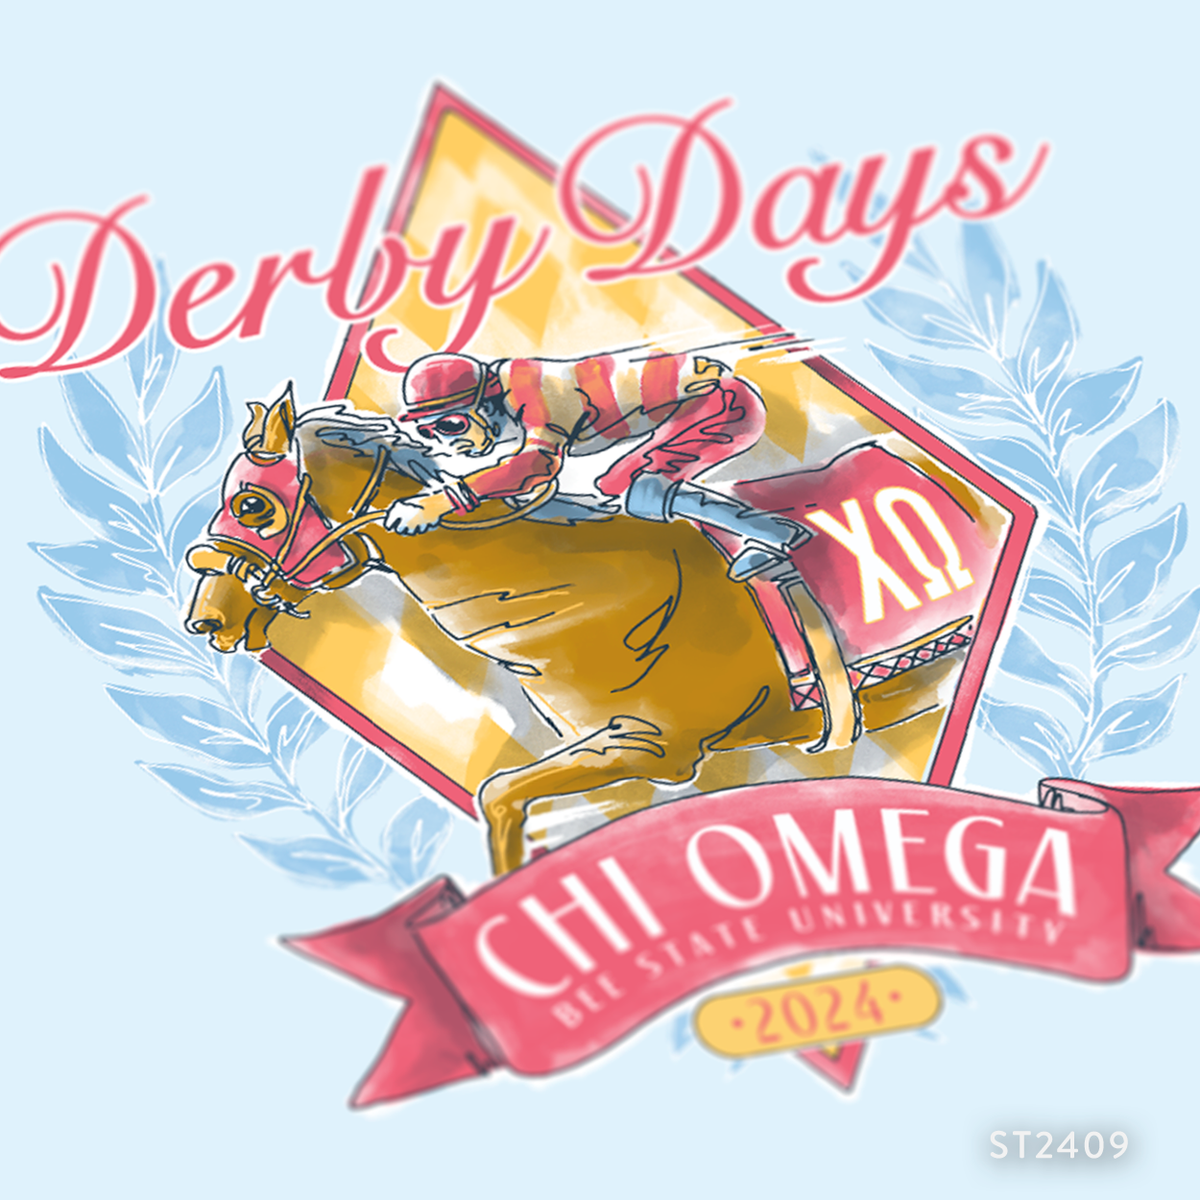 Chi Omega Derby Days Event T-Shirt Design